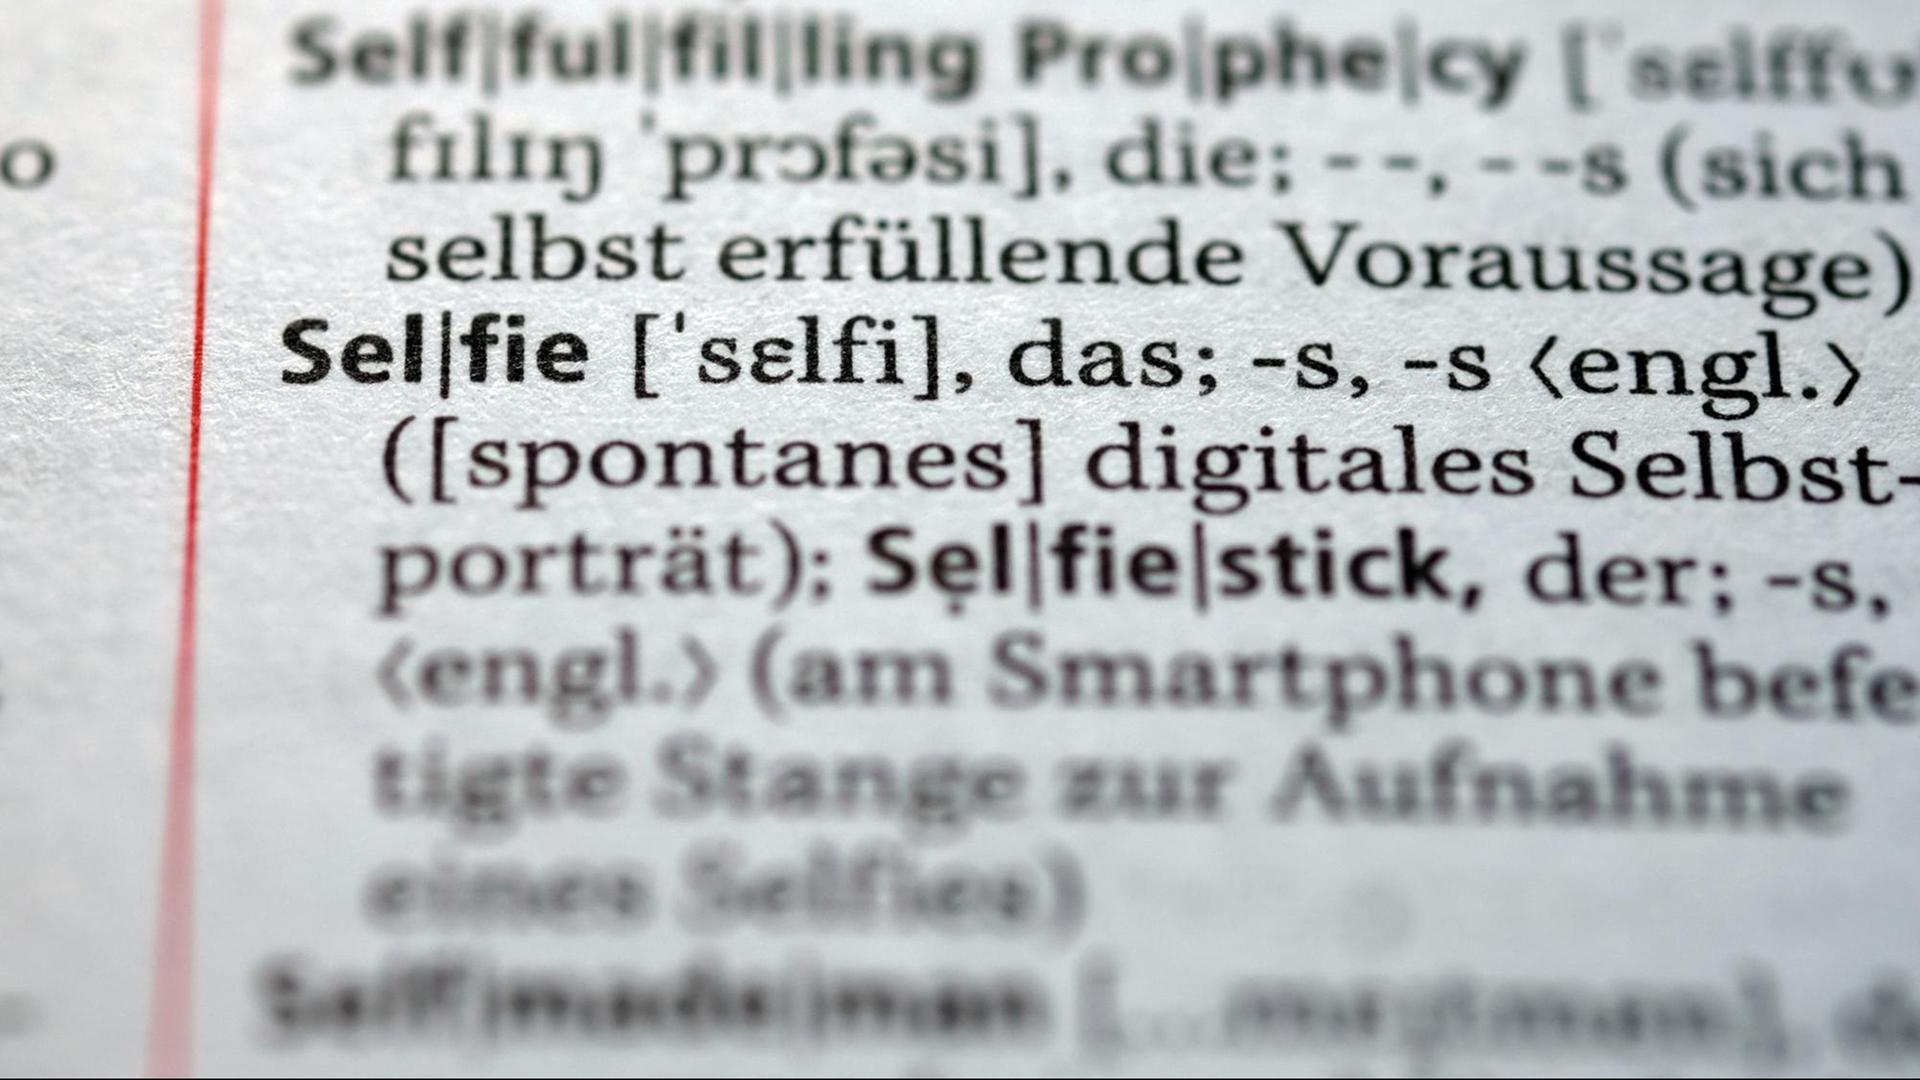 Der Begriff "Selfie" für ein fotografisches Selbstporträt ist im neuen Duden zu sehen. Das Nachschlagewerk wurde um 5000 Wörter ergänzt und umfasst nun 145.000 Stichwörter.